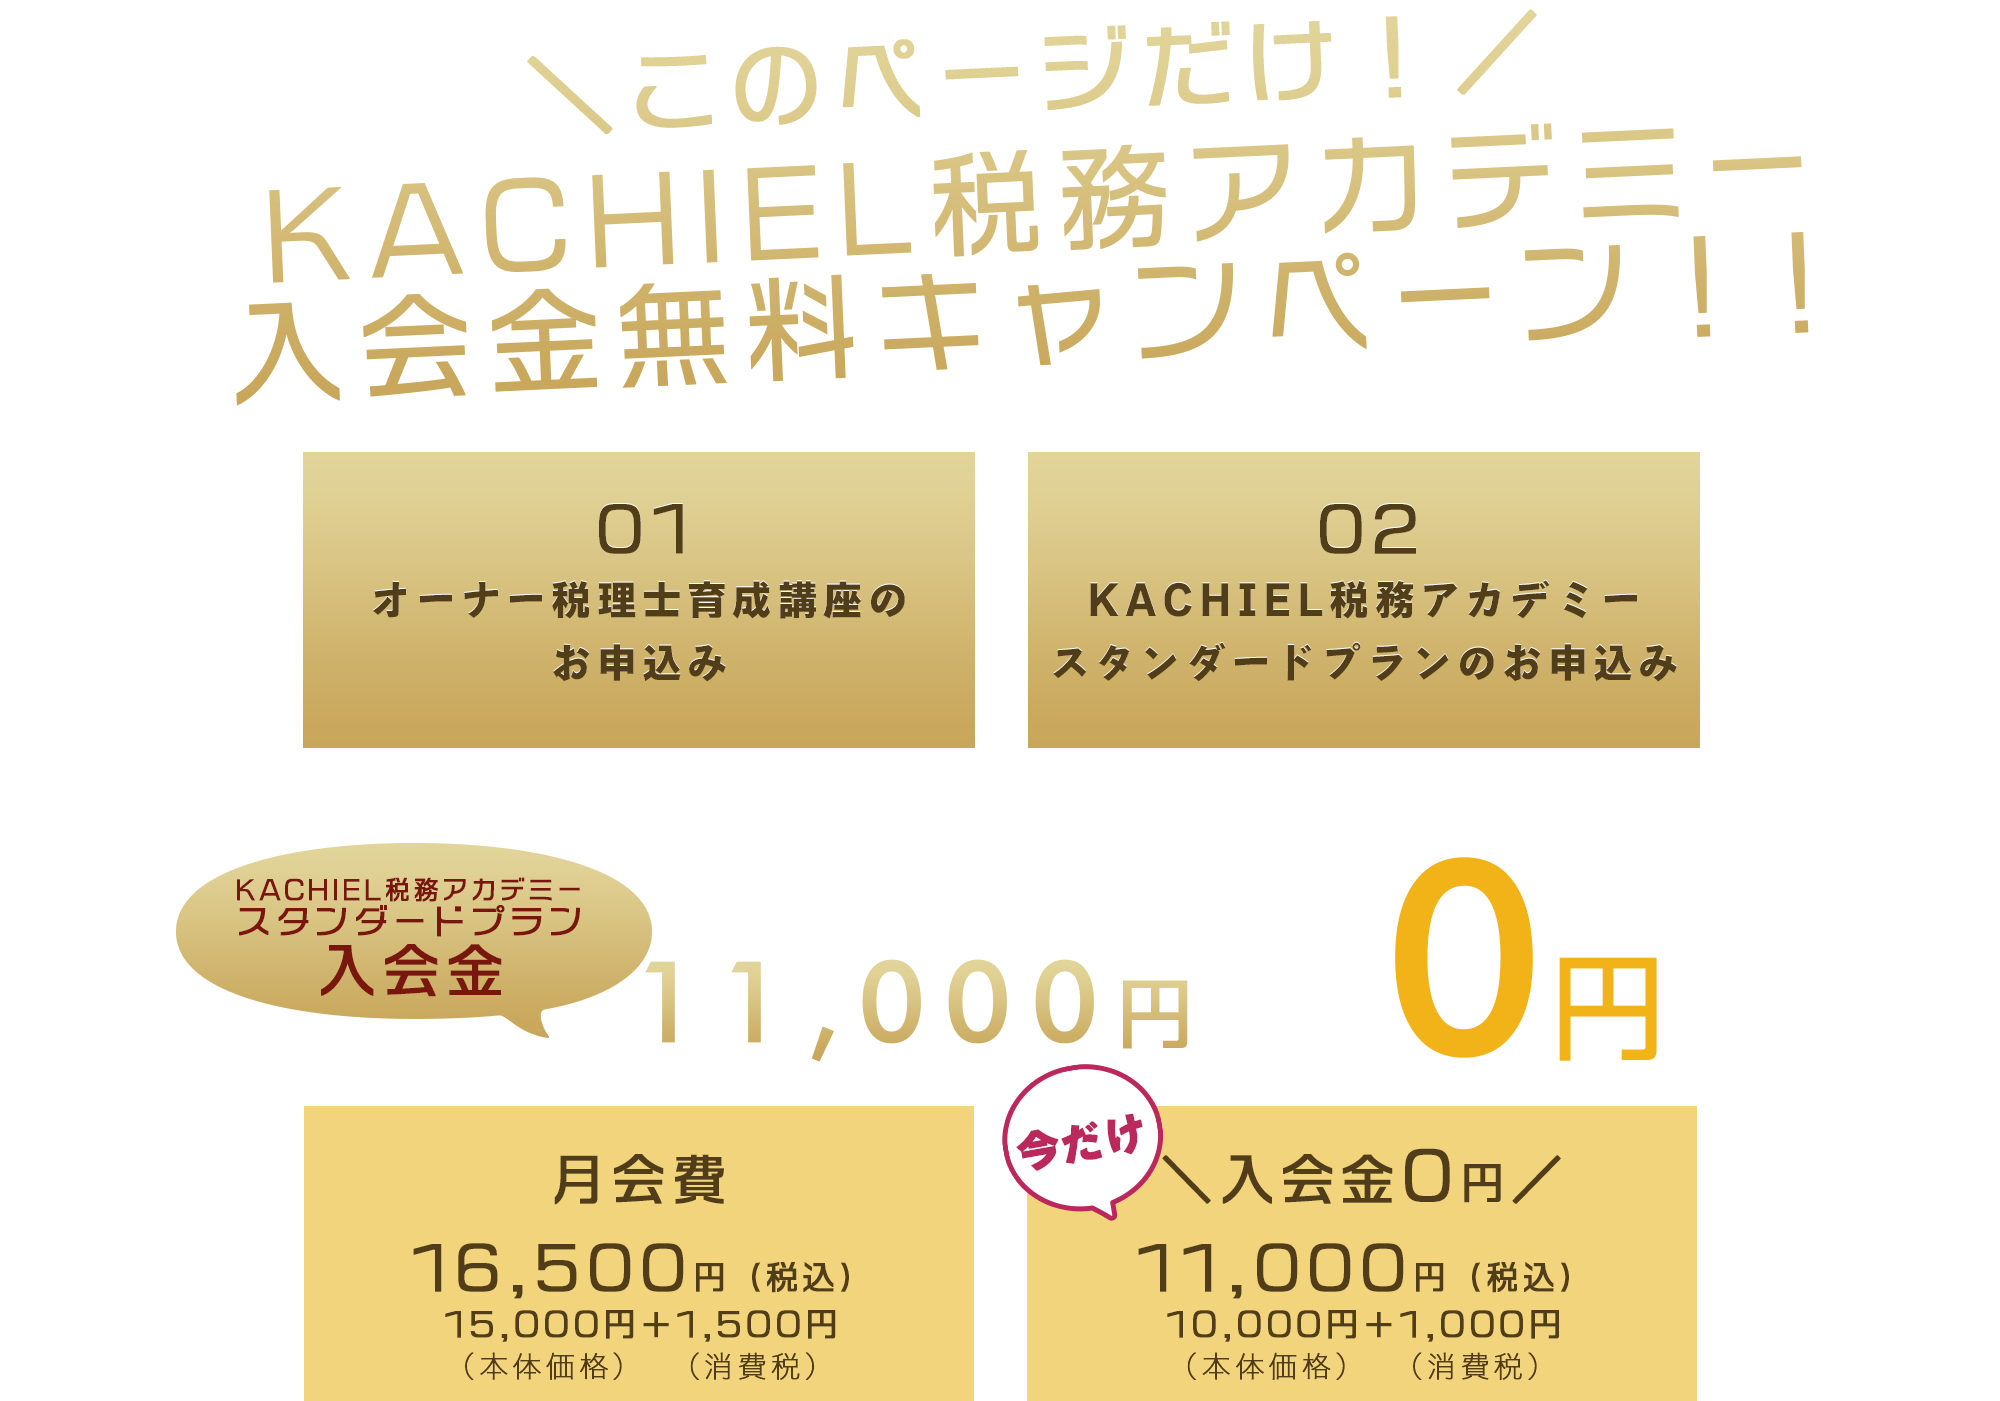 ＼このページだけ！／KACHIEL税務アカデミー入会金無料キャンペーン！！